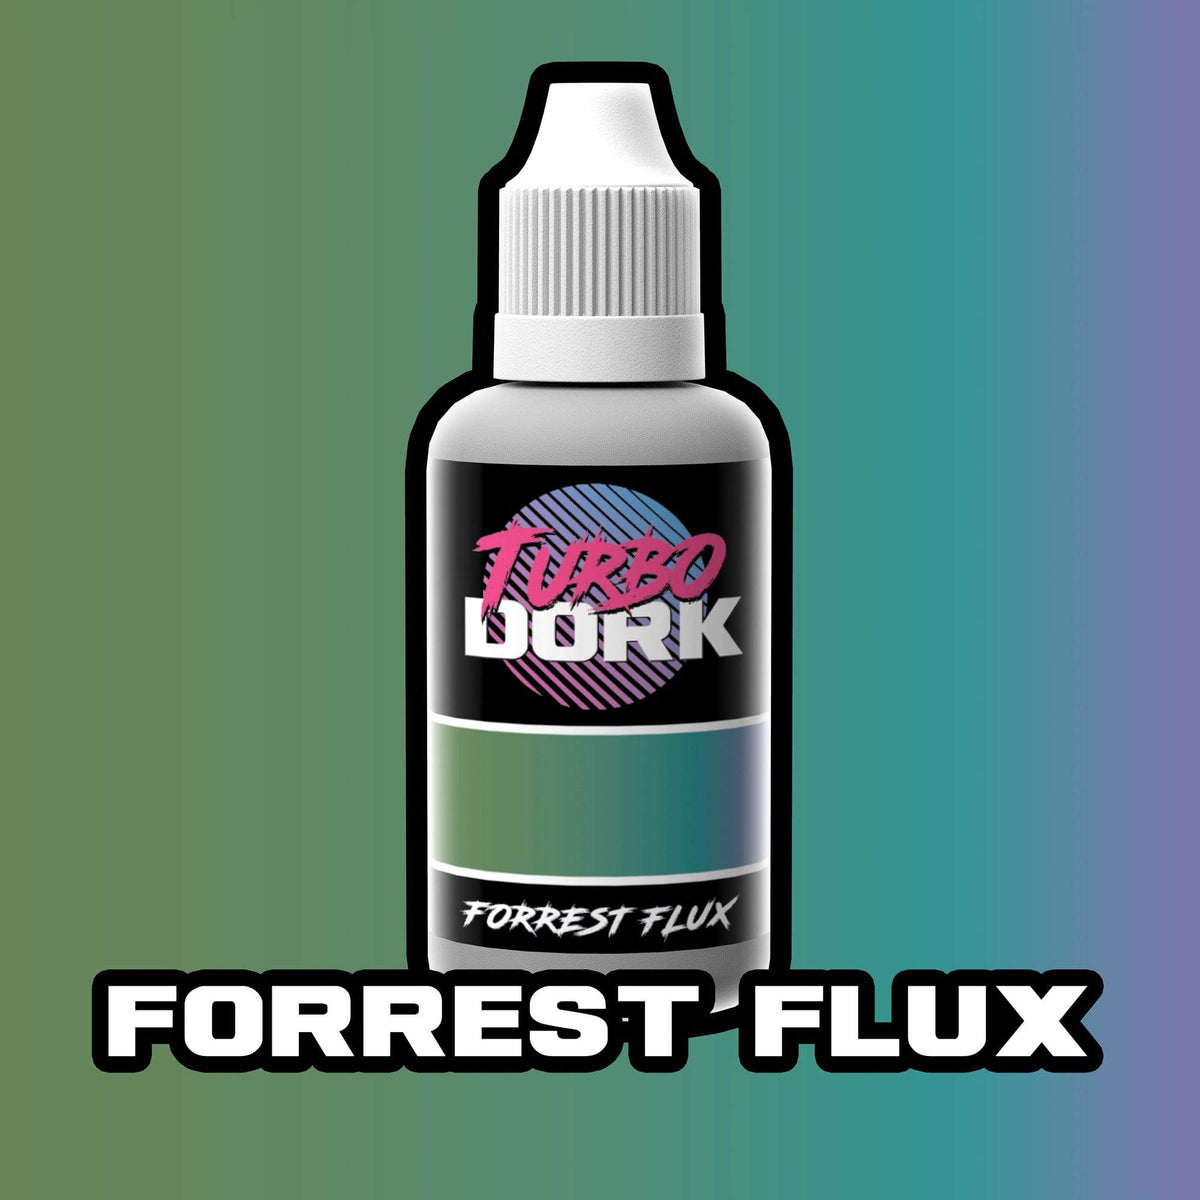 Forrest Flux Colorshift Acrylic Paint Turboshift Turbo Dork Exit 23 Games Forrest Flux Colorshift Acrylic Paint